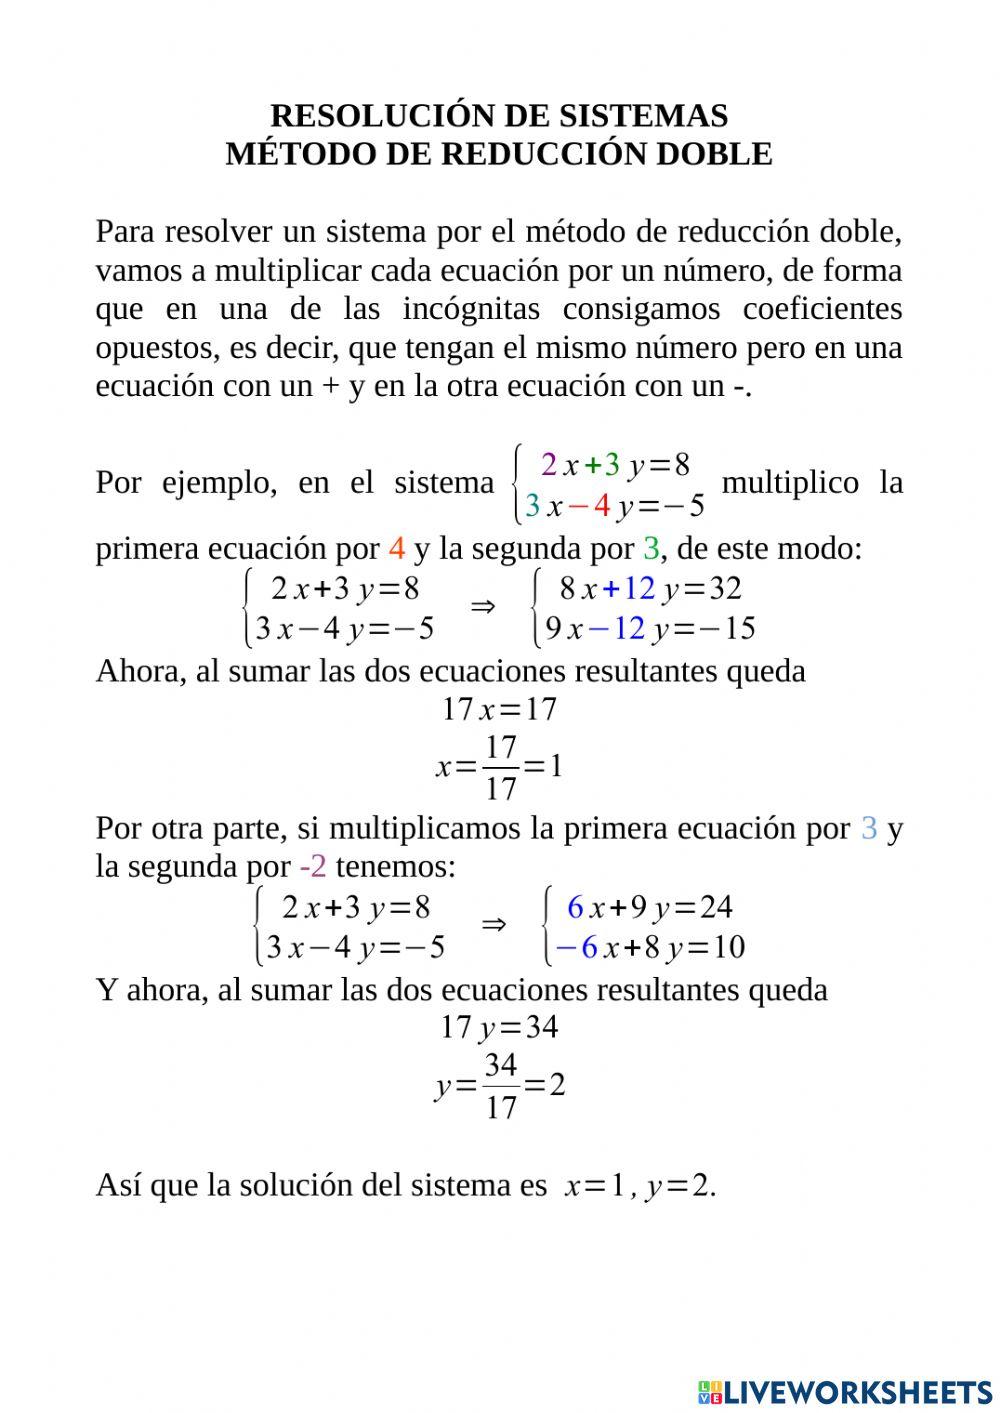 Sistemas de ecuaciones - Método de reducción doble